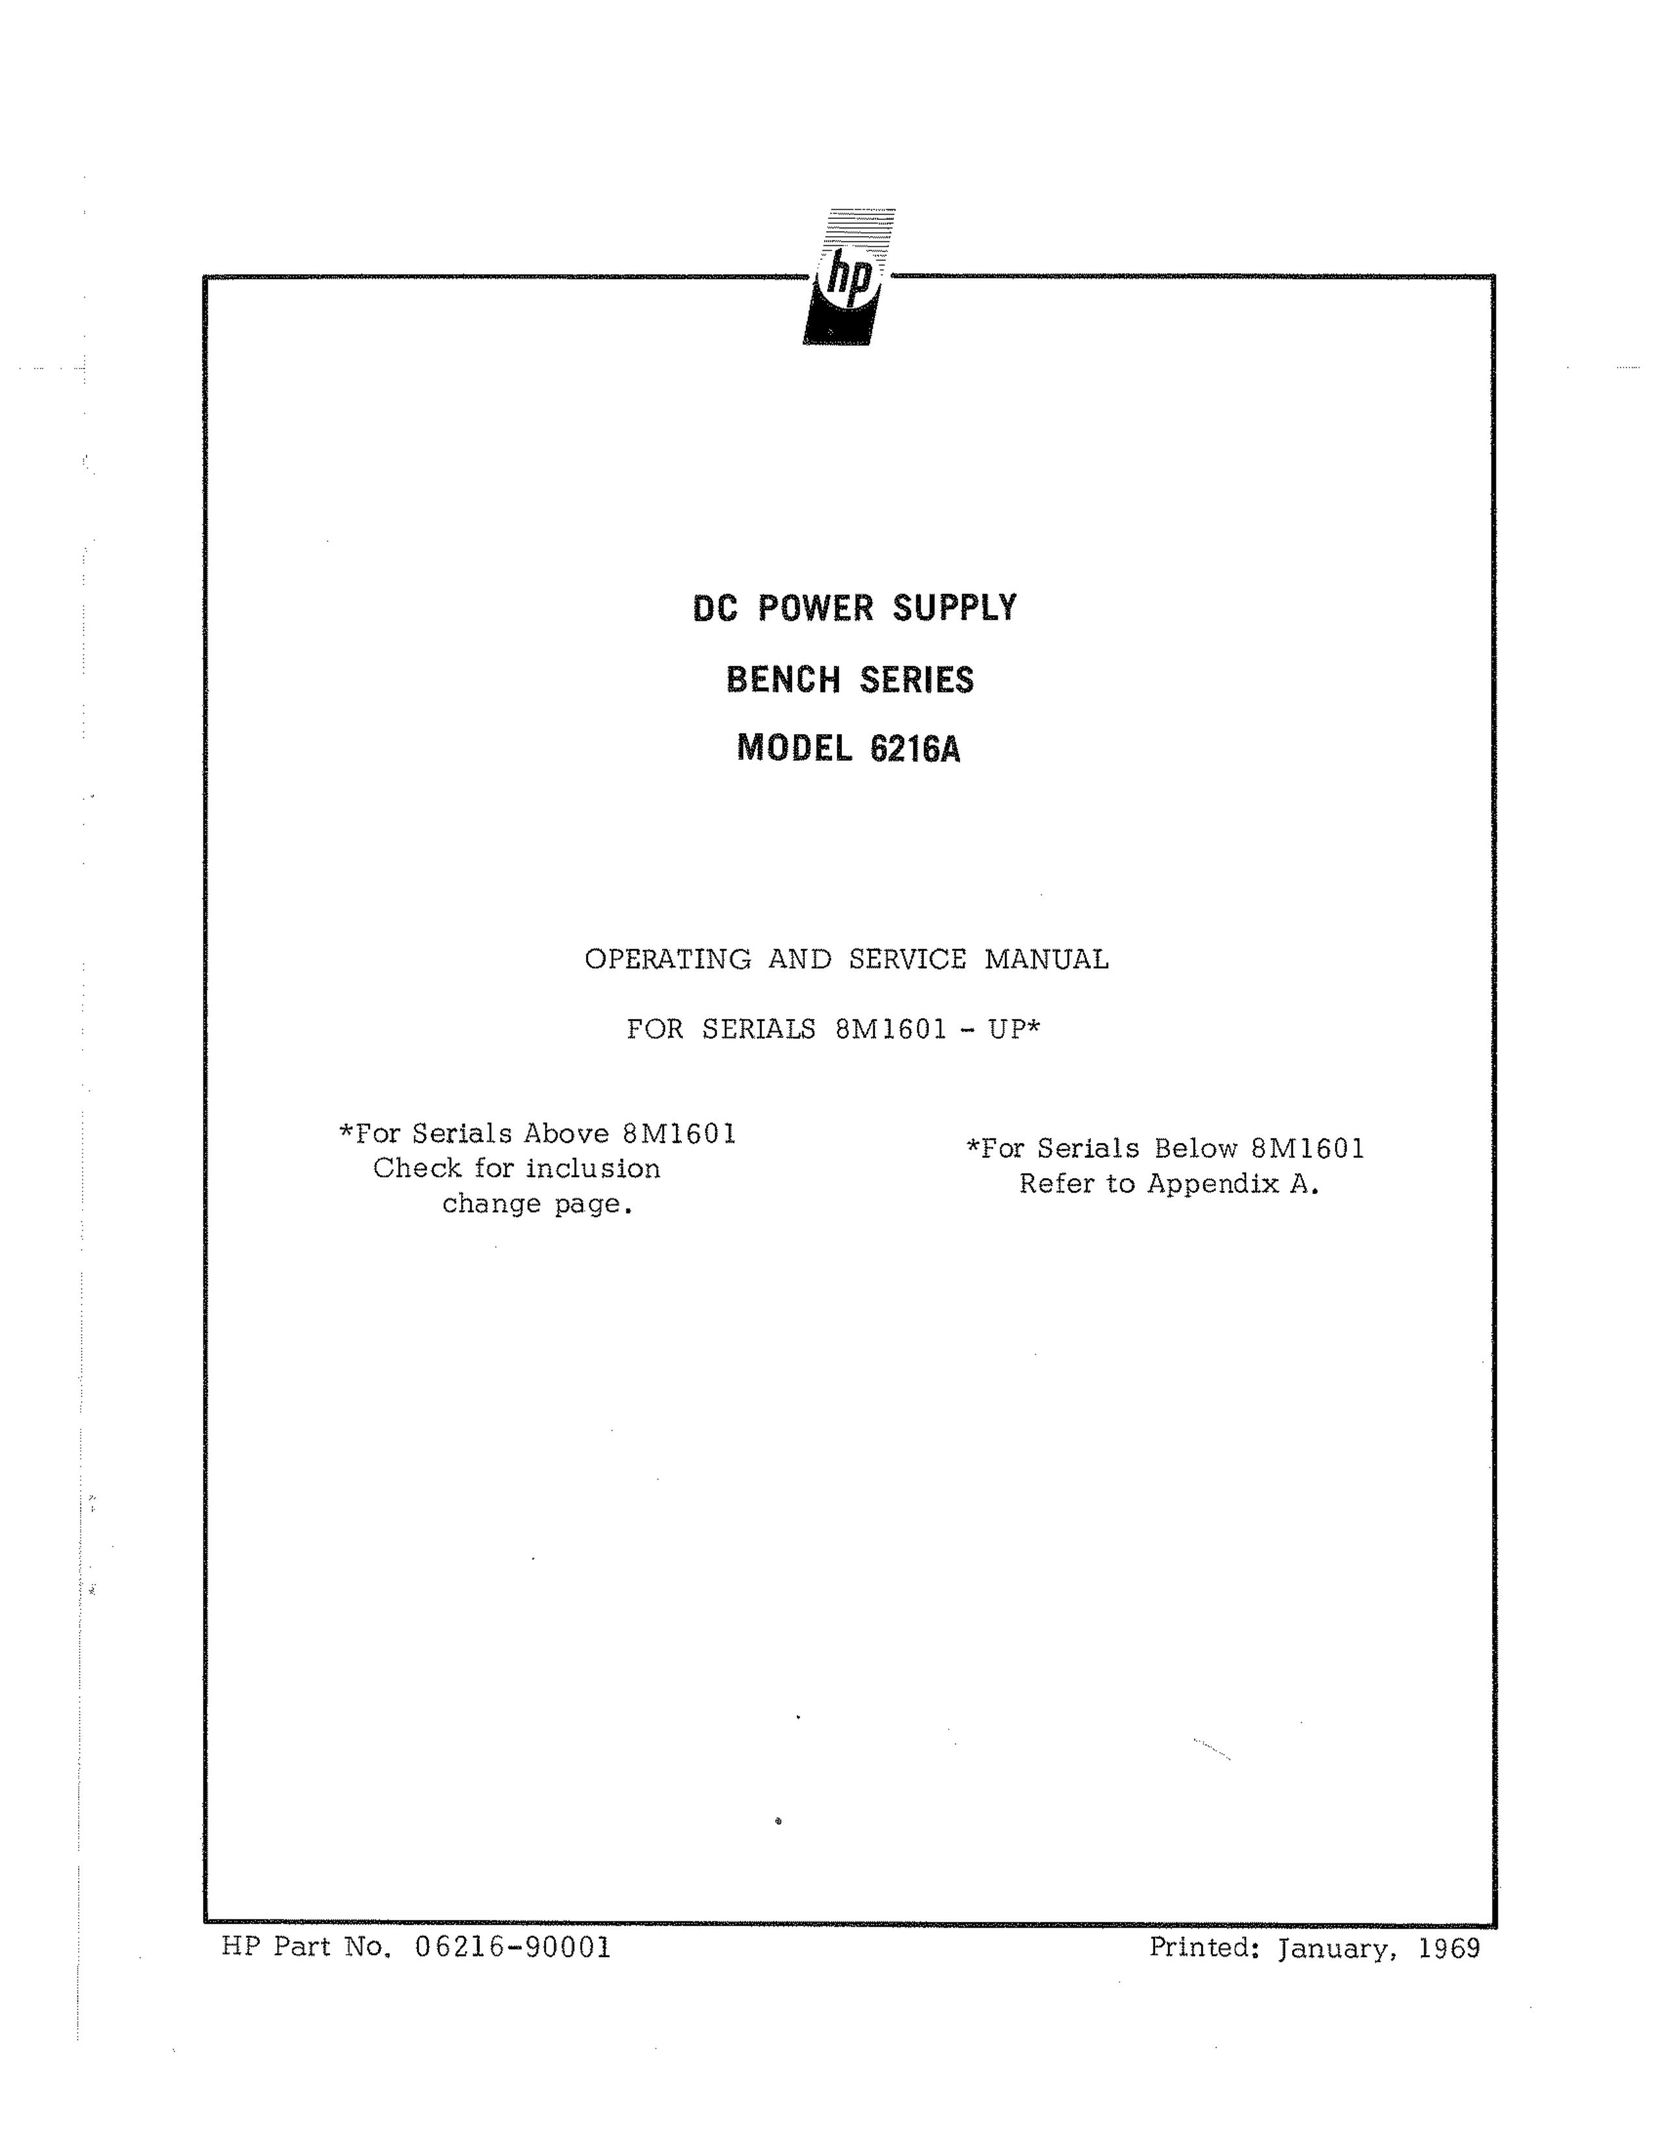 HP (Hewlett-Packard) 6216A Power Supply User Manual